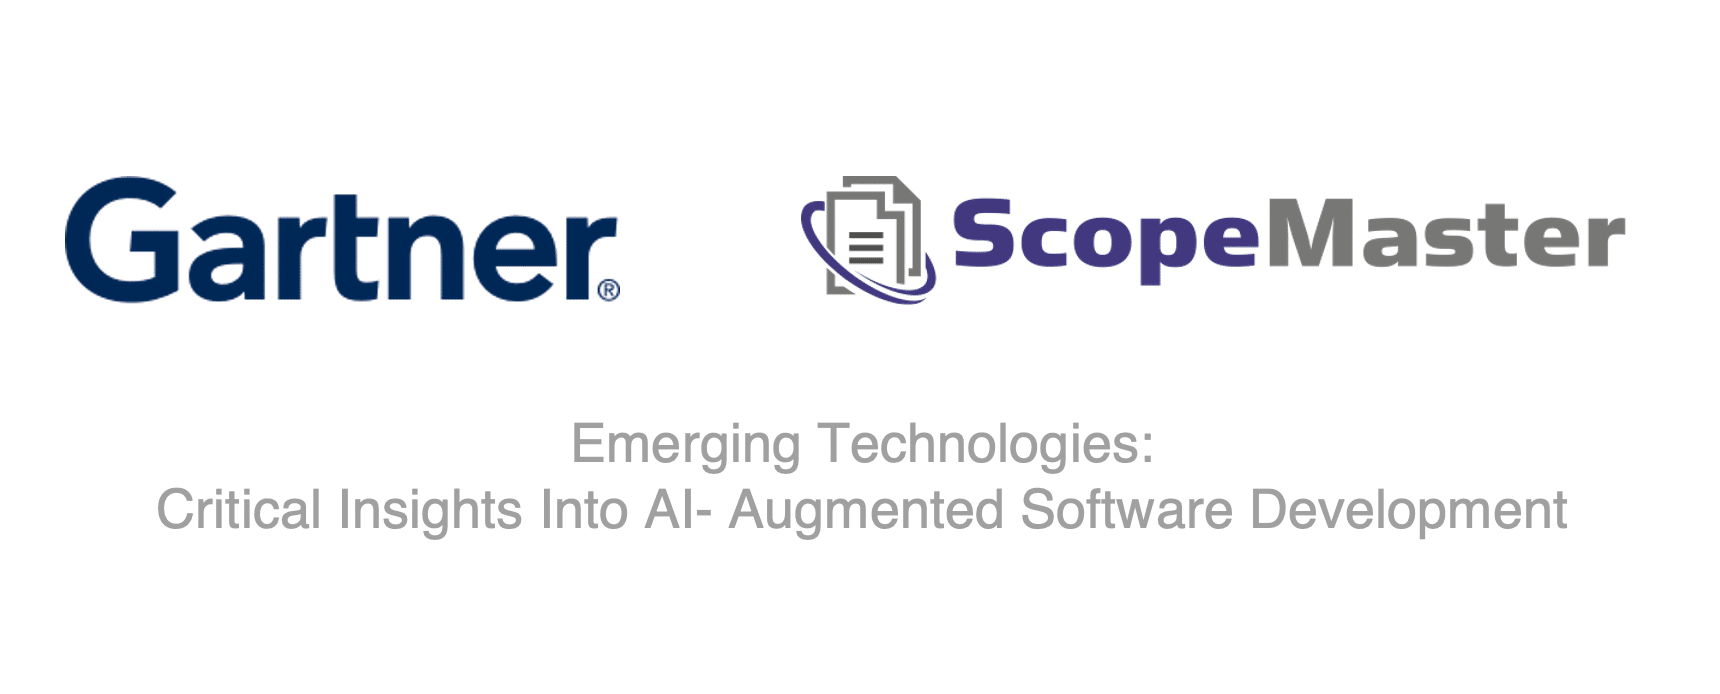 Gartner presenta ScopeMaster en desarrollo de software mejorado con IA